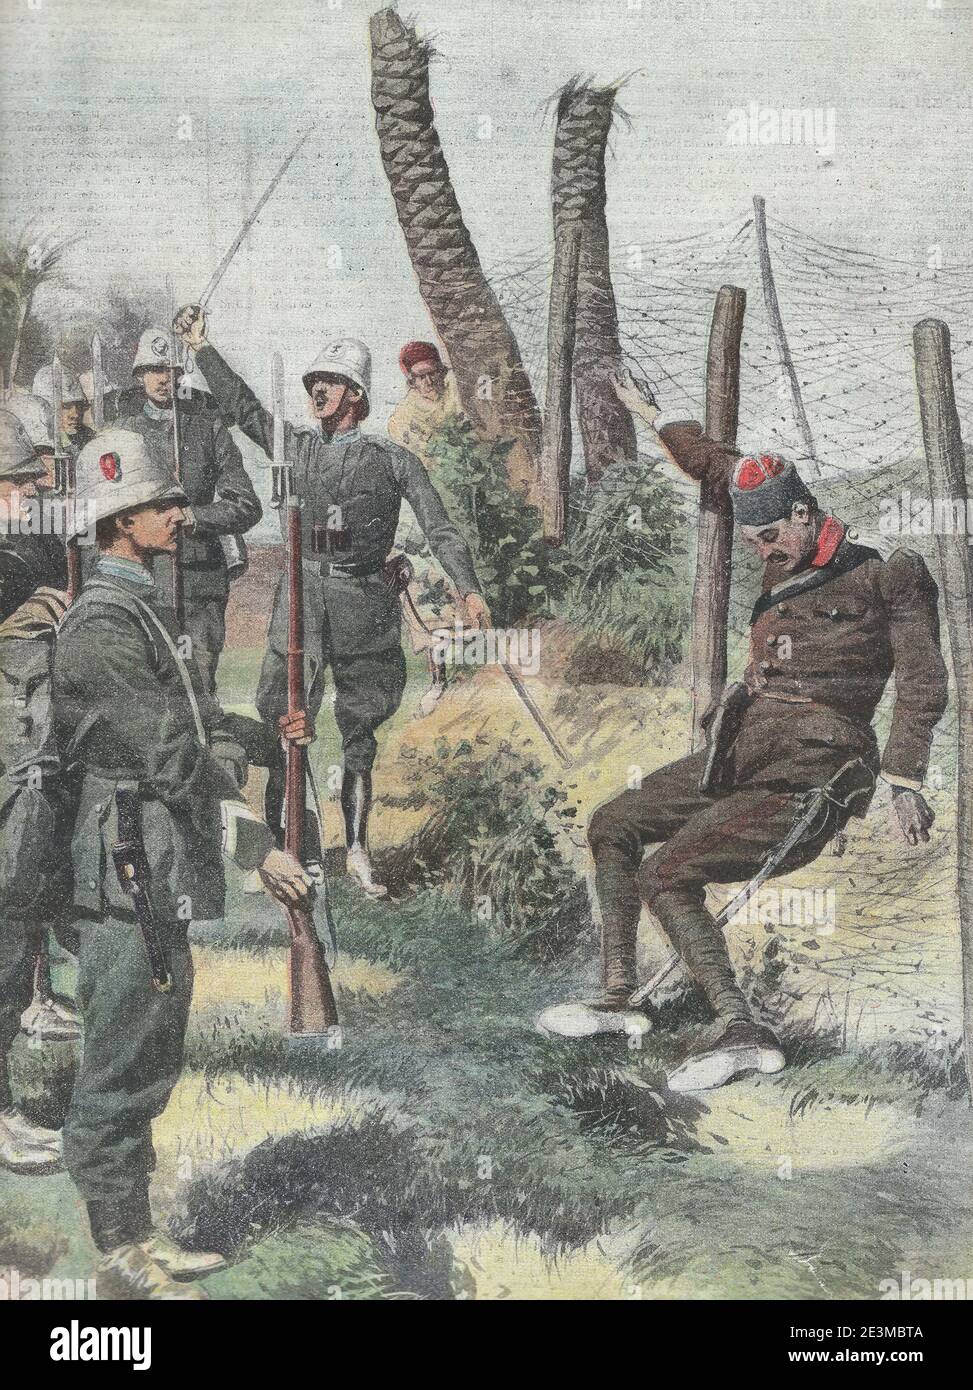 El victorioso honra a los caídos - tropas italianas con sus armas, alrededor de 1912 Foto de stock